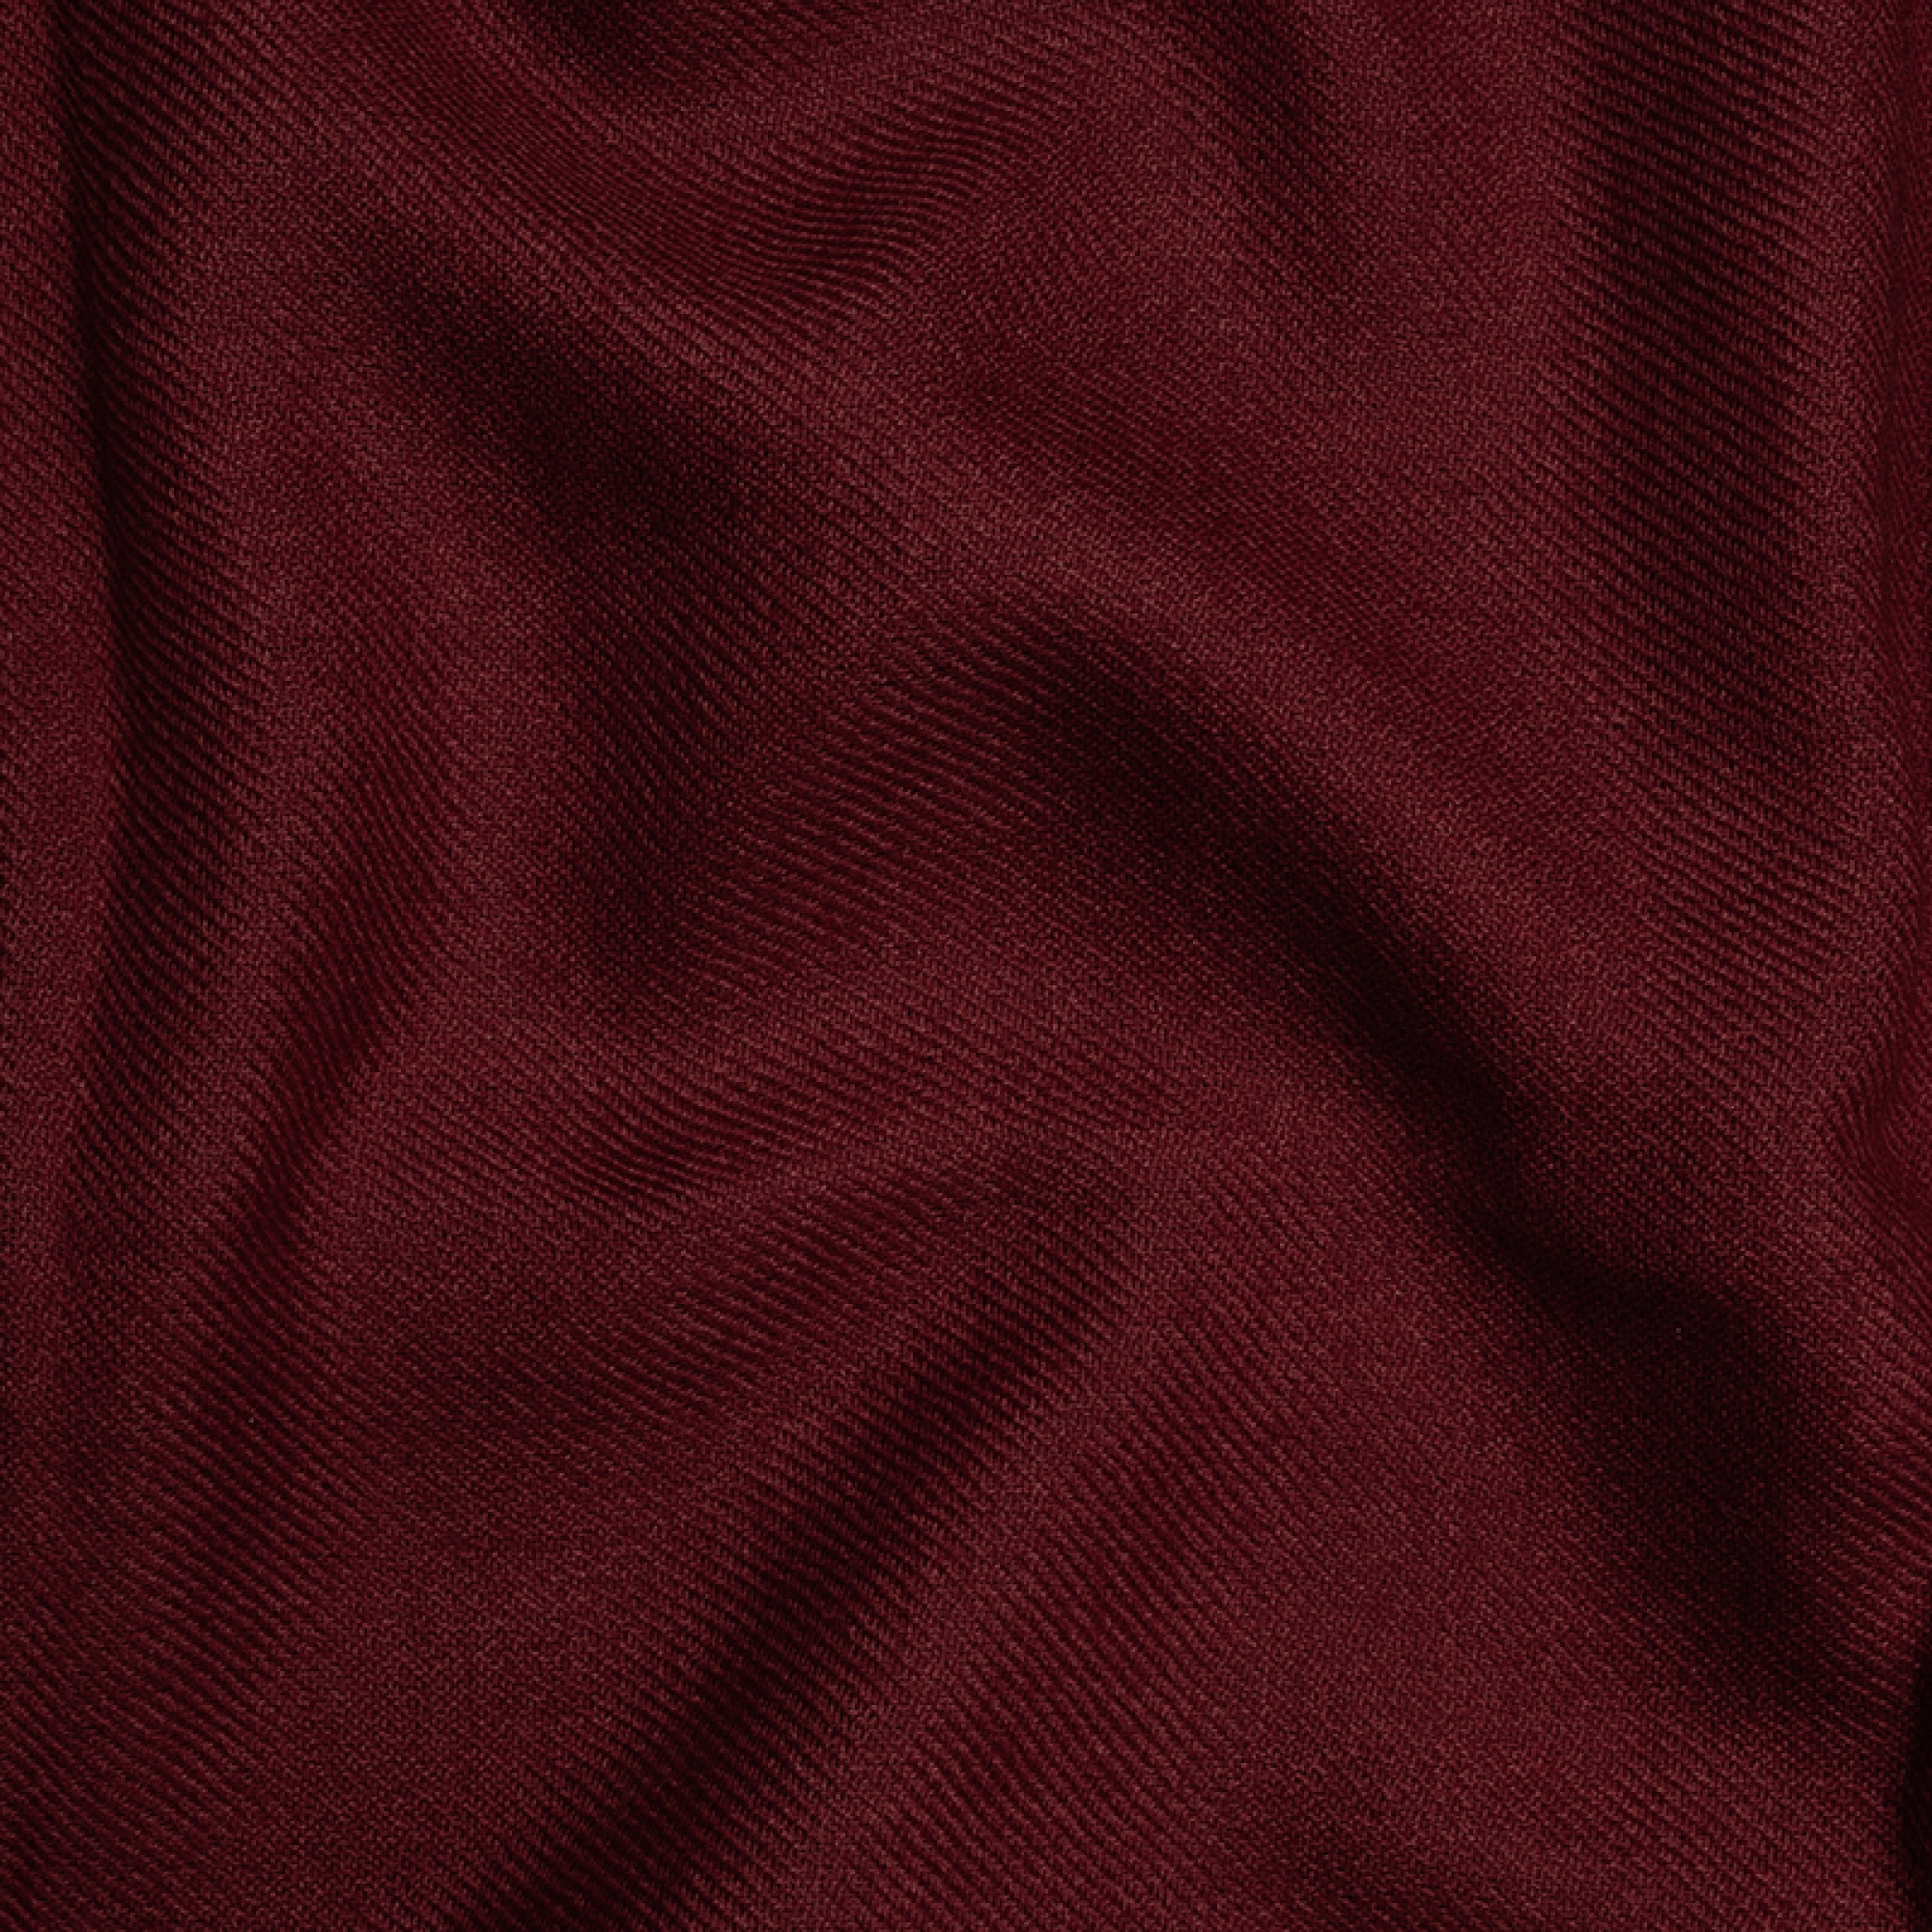 Cashmere accessories blanket toodoo plain xl 240 x 260 dark auburn 240 x 260 cm